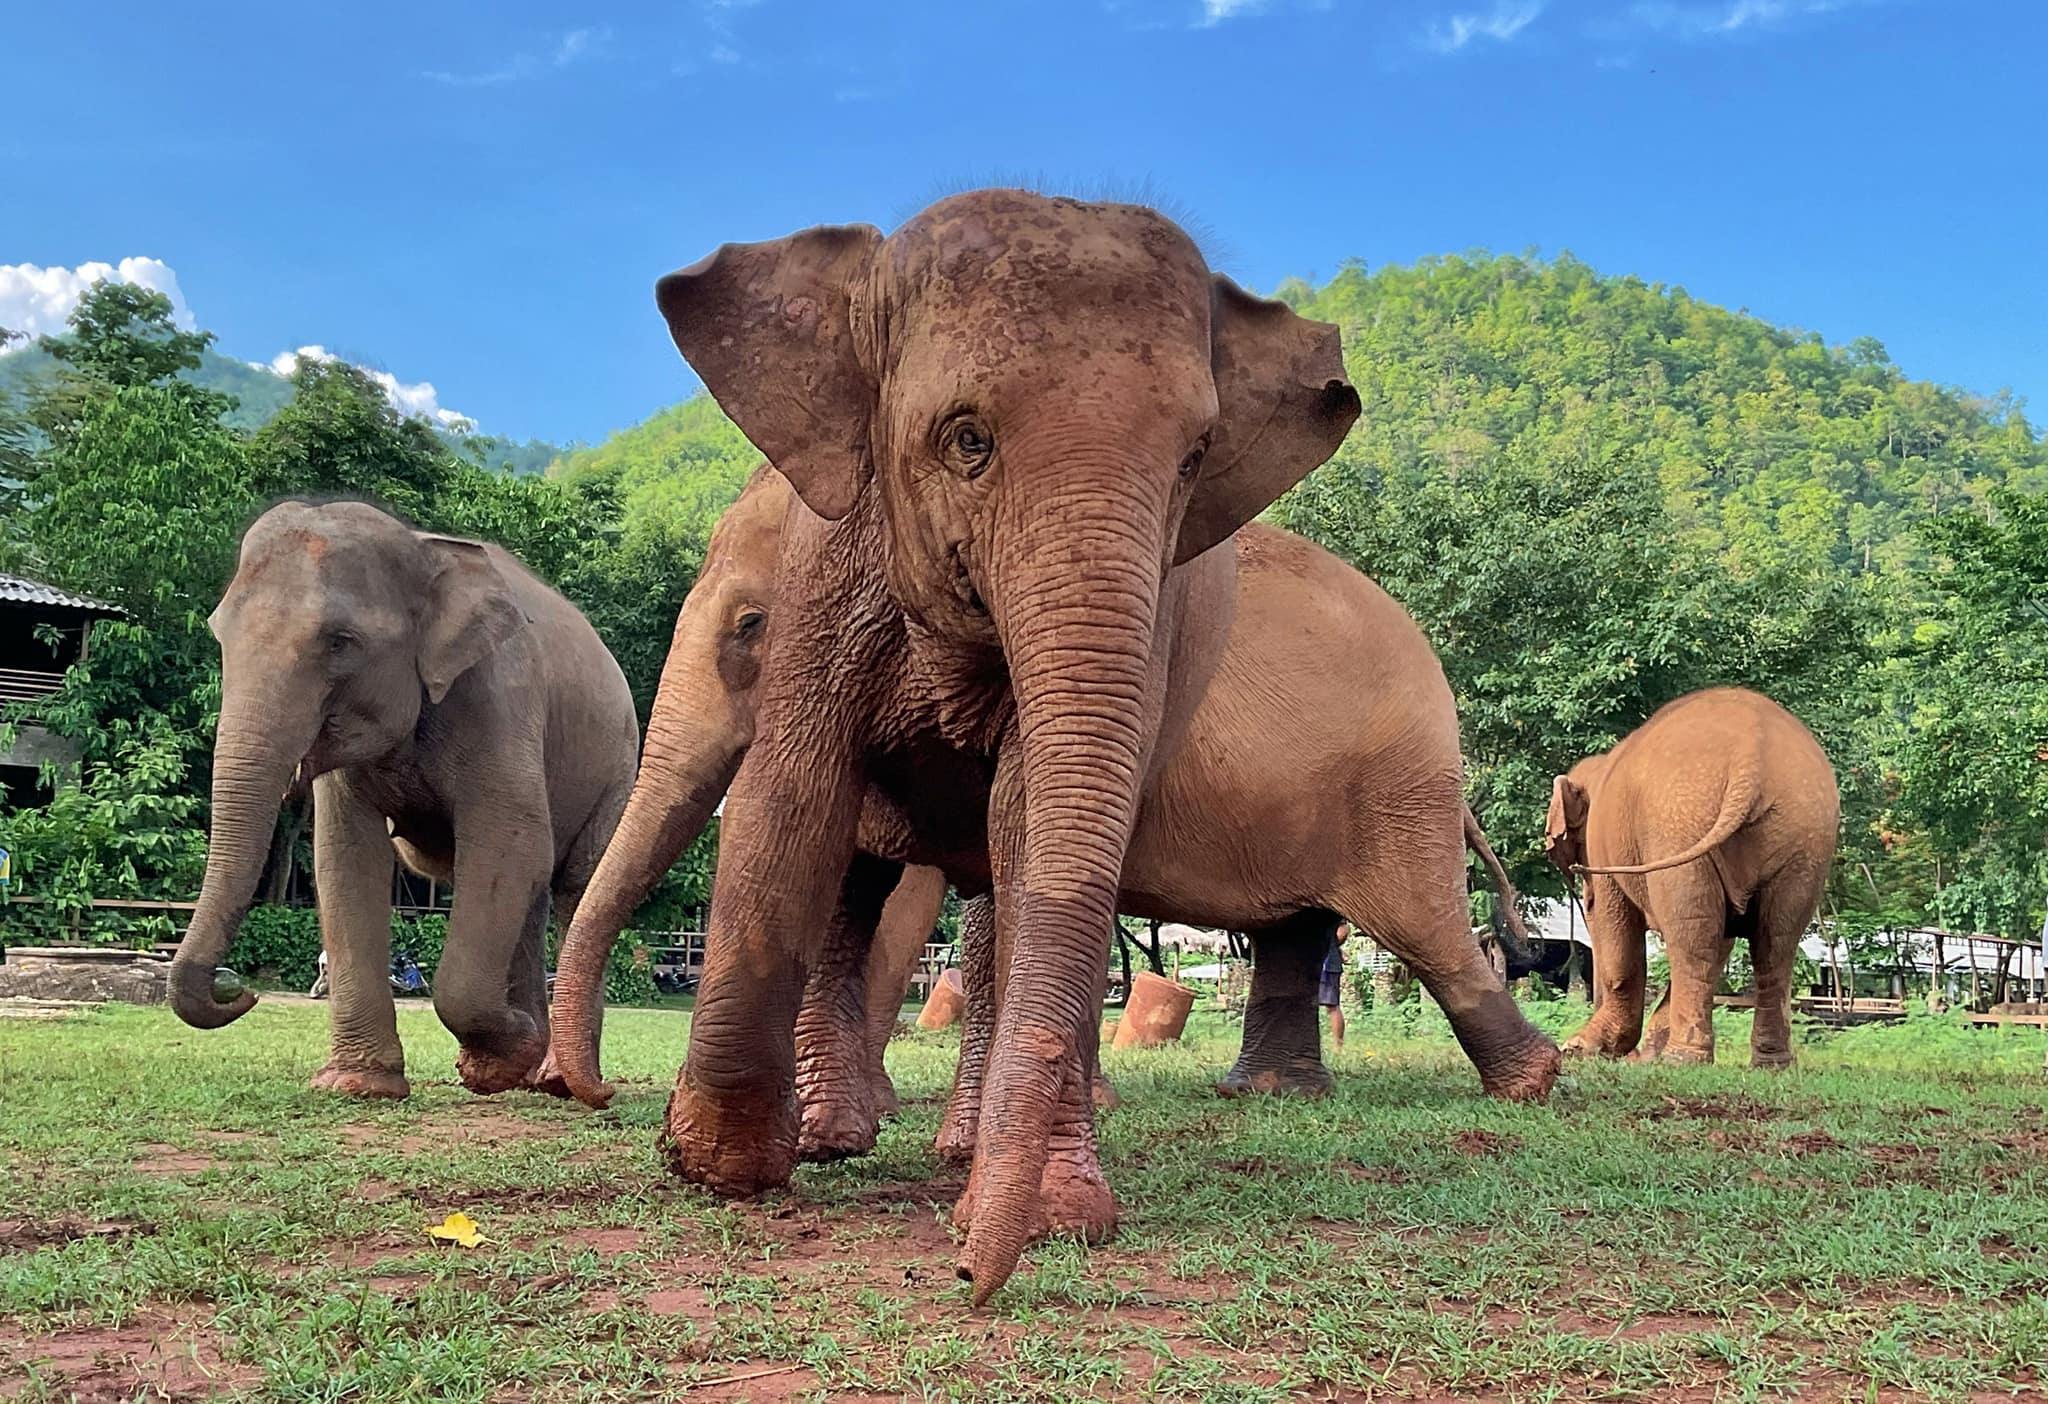 Meet the Elephants - Elephant Life Stories at Elephant Nature Park